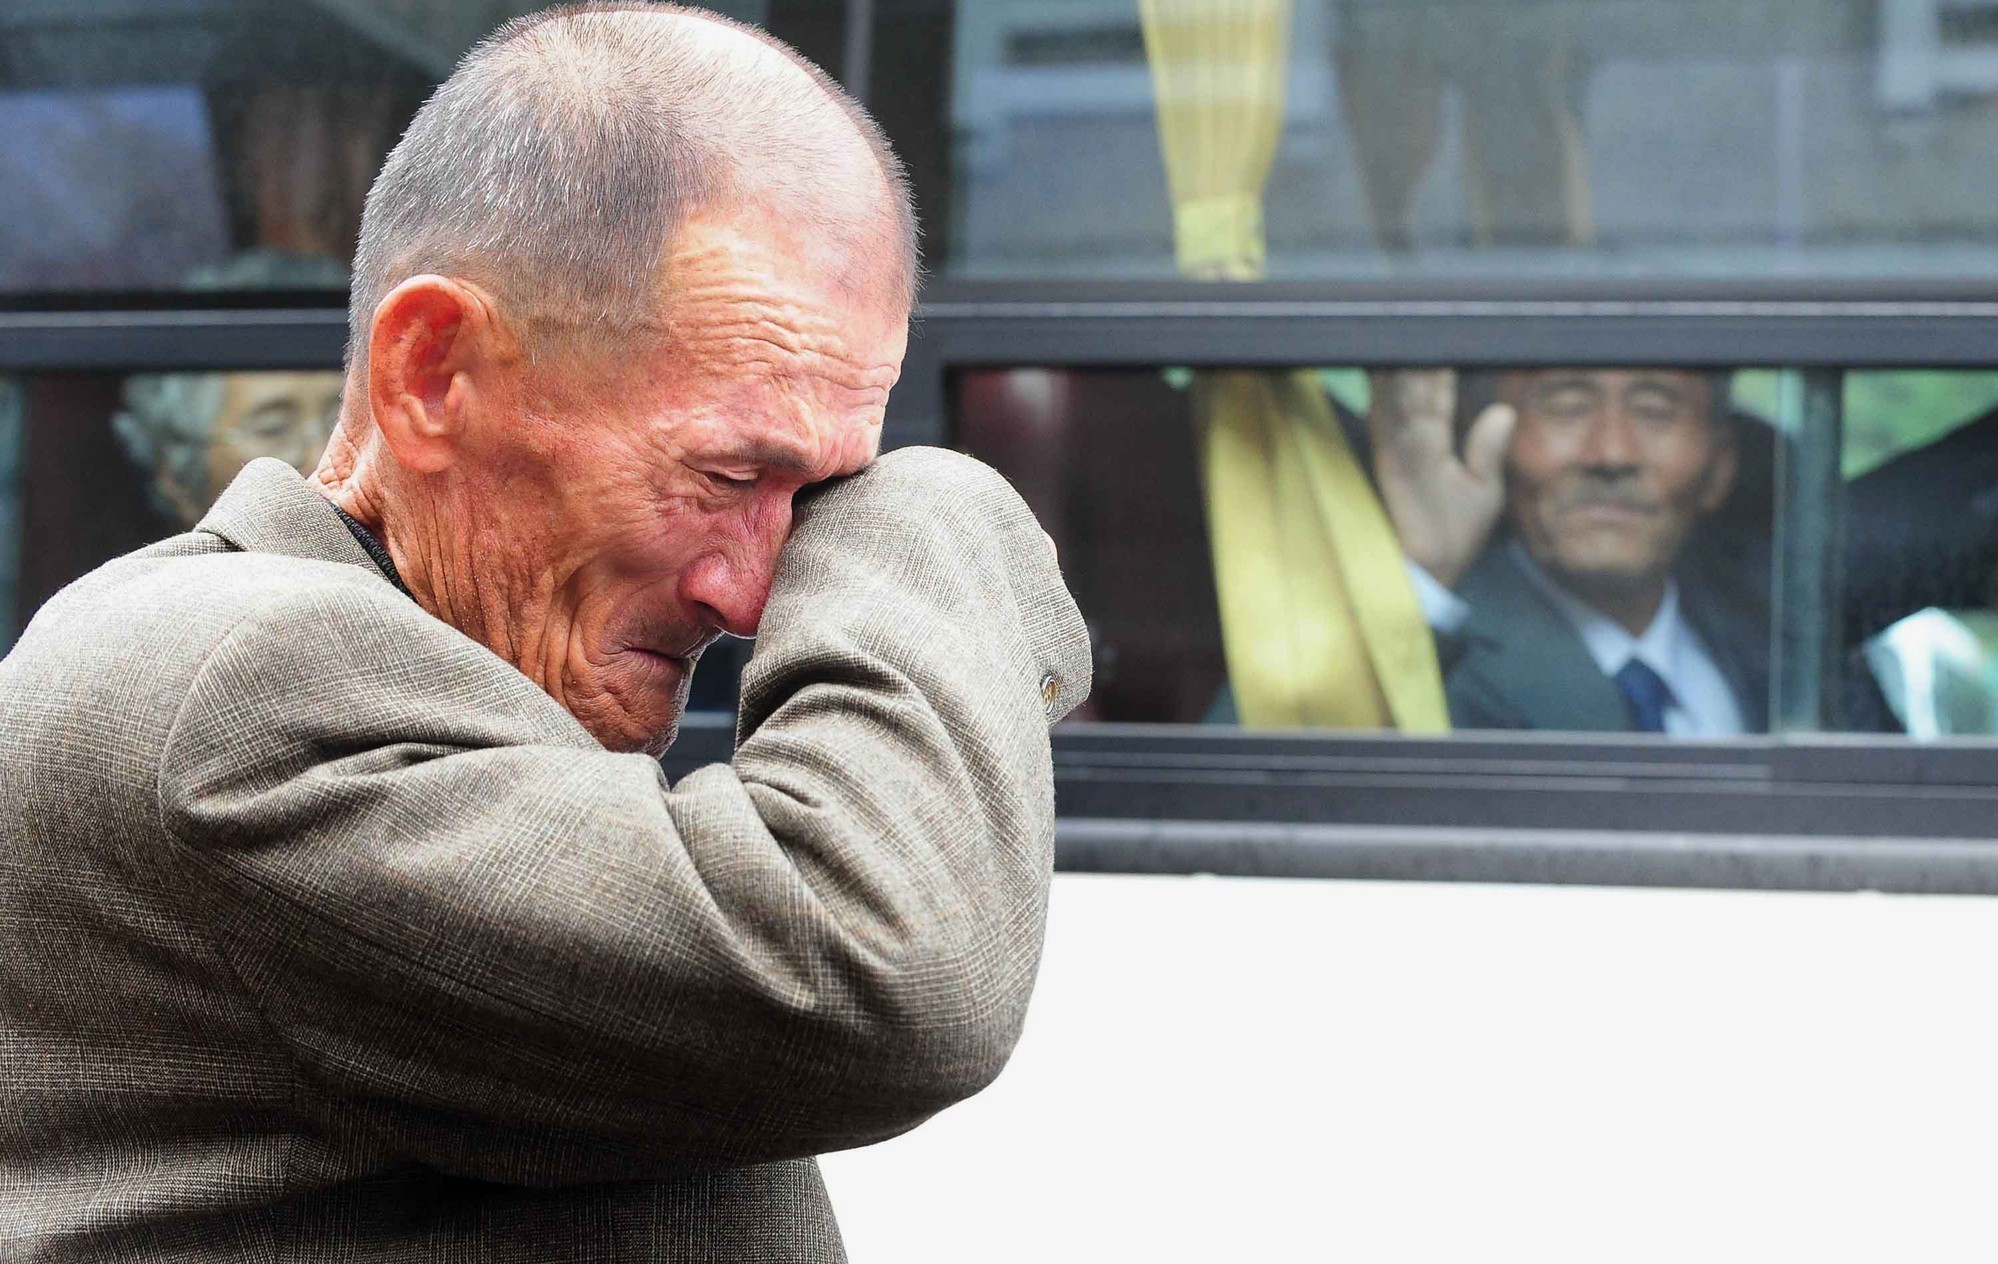 9. 2 koreańskich braci którzy spotkali się po 60 latach rozdzielenia żyjąc w dwóch Koreach